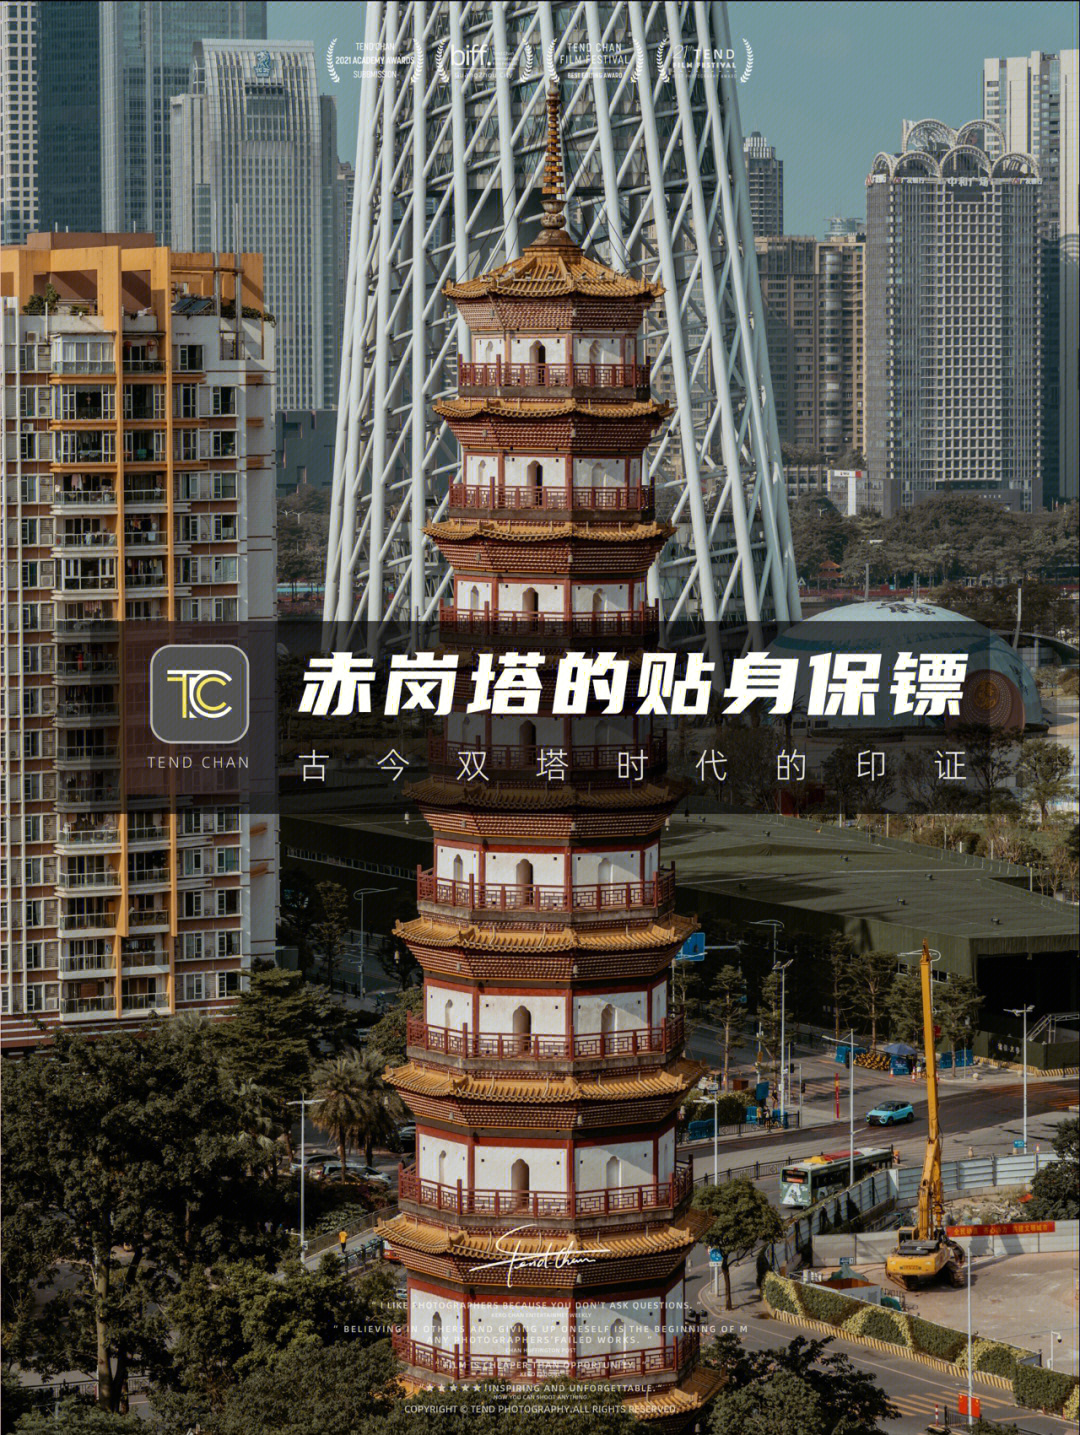 广州拍照赤岗塔和它的贴身保镖